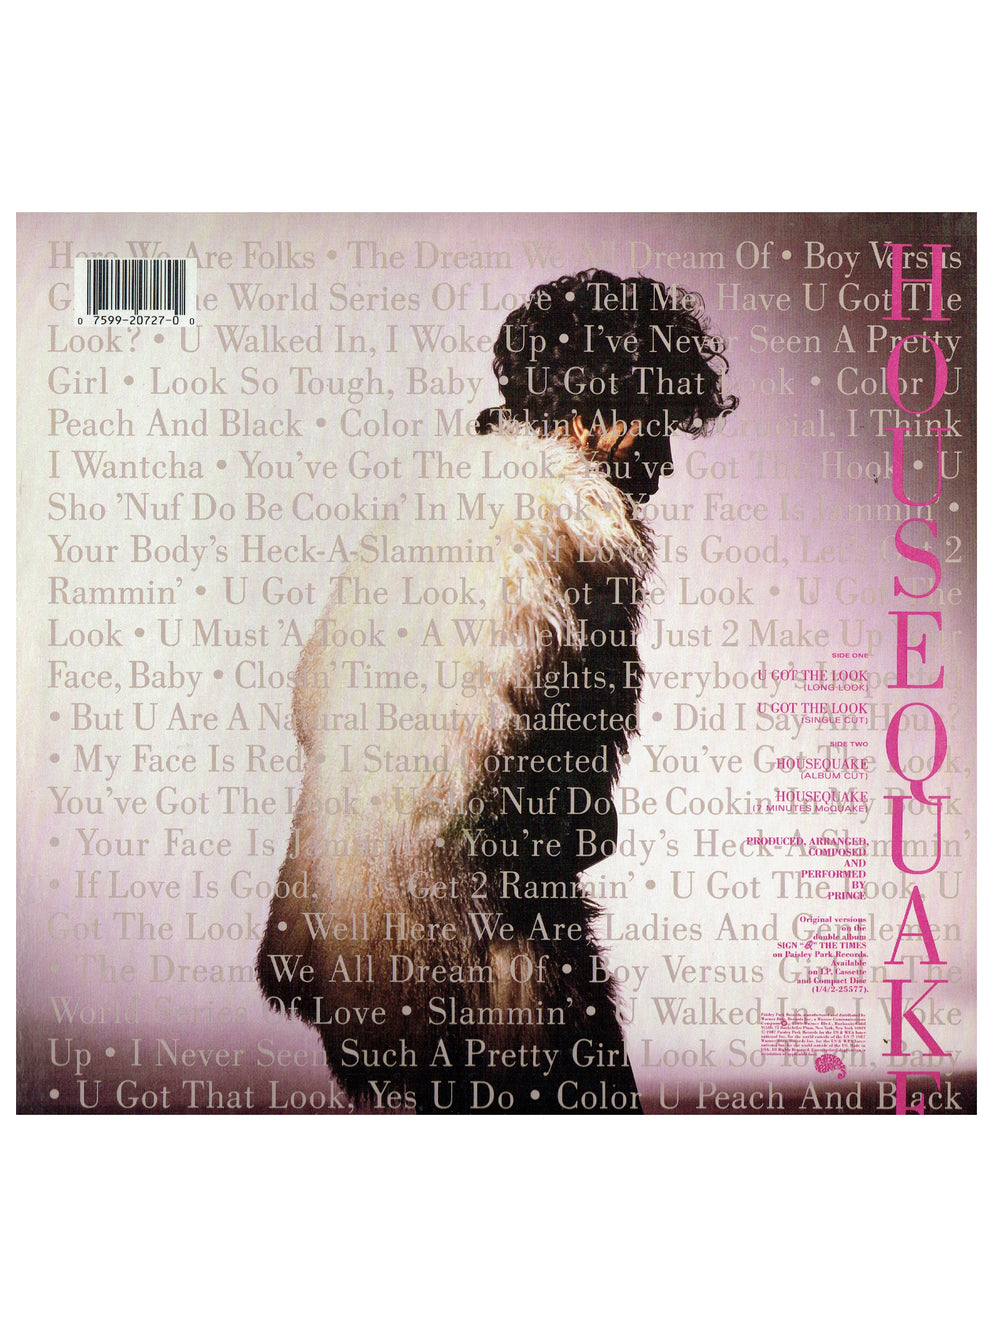 Prince – U Got The Look Vinyl 12" US Preloved: 1987